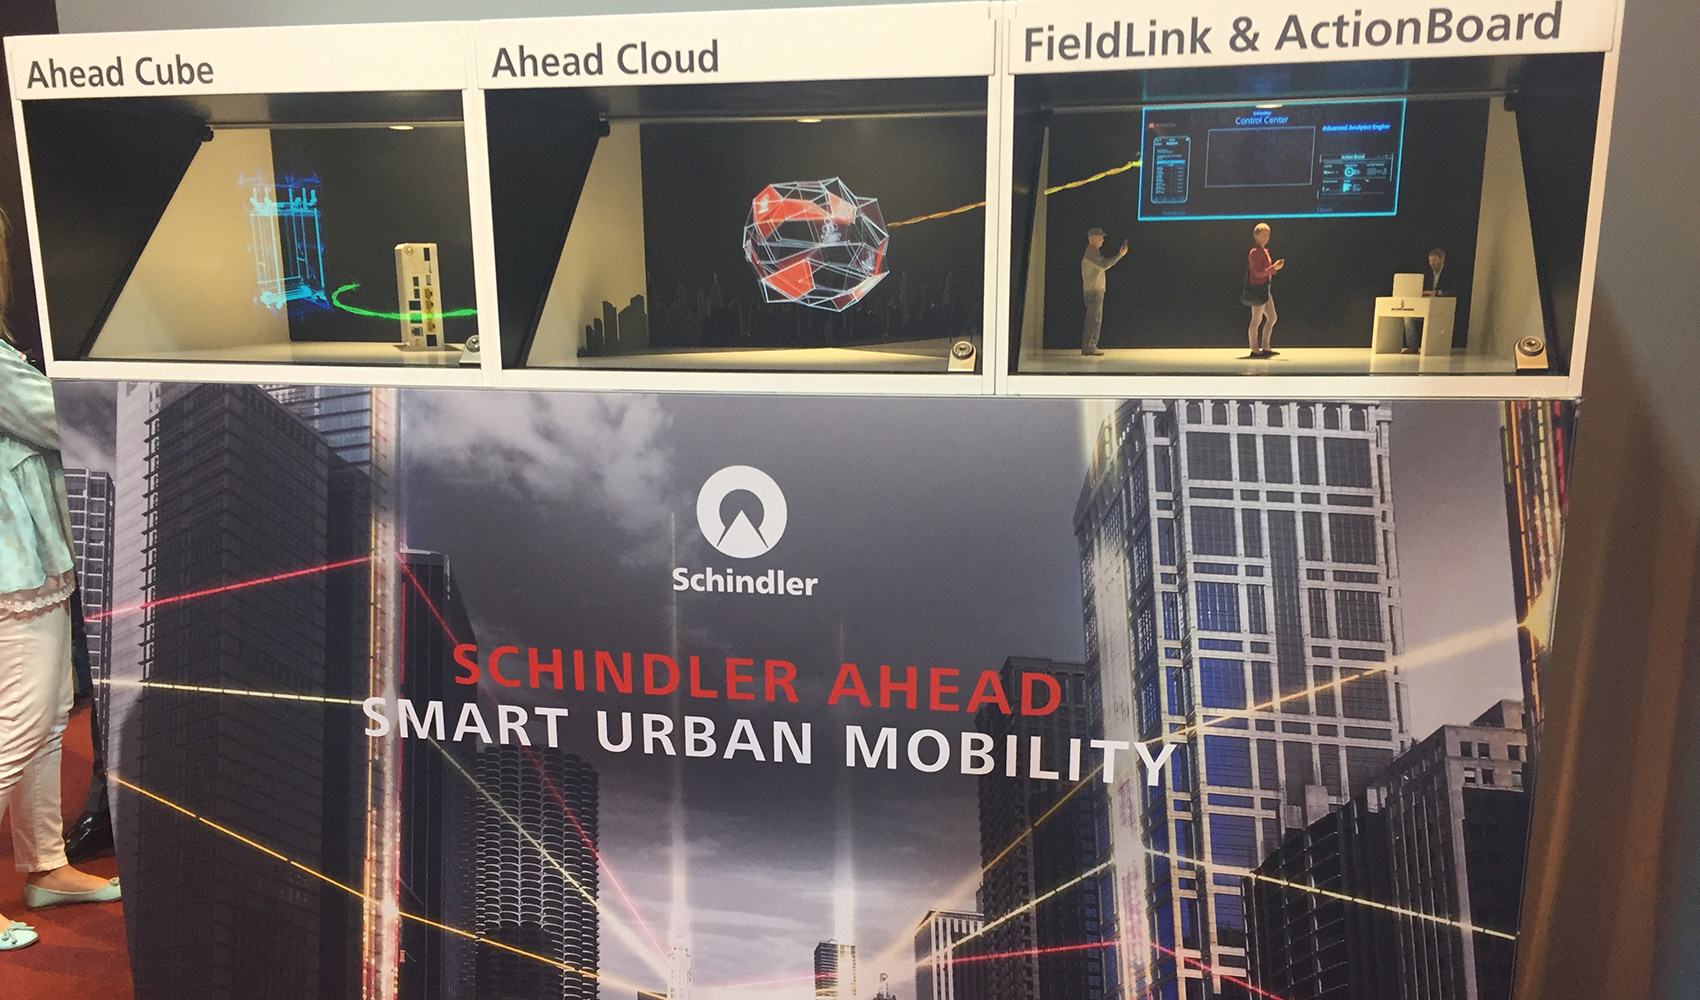 Schindler Ahead ofrece informacin detallada en tiempo real a travs de ActionBoard